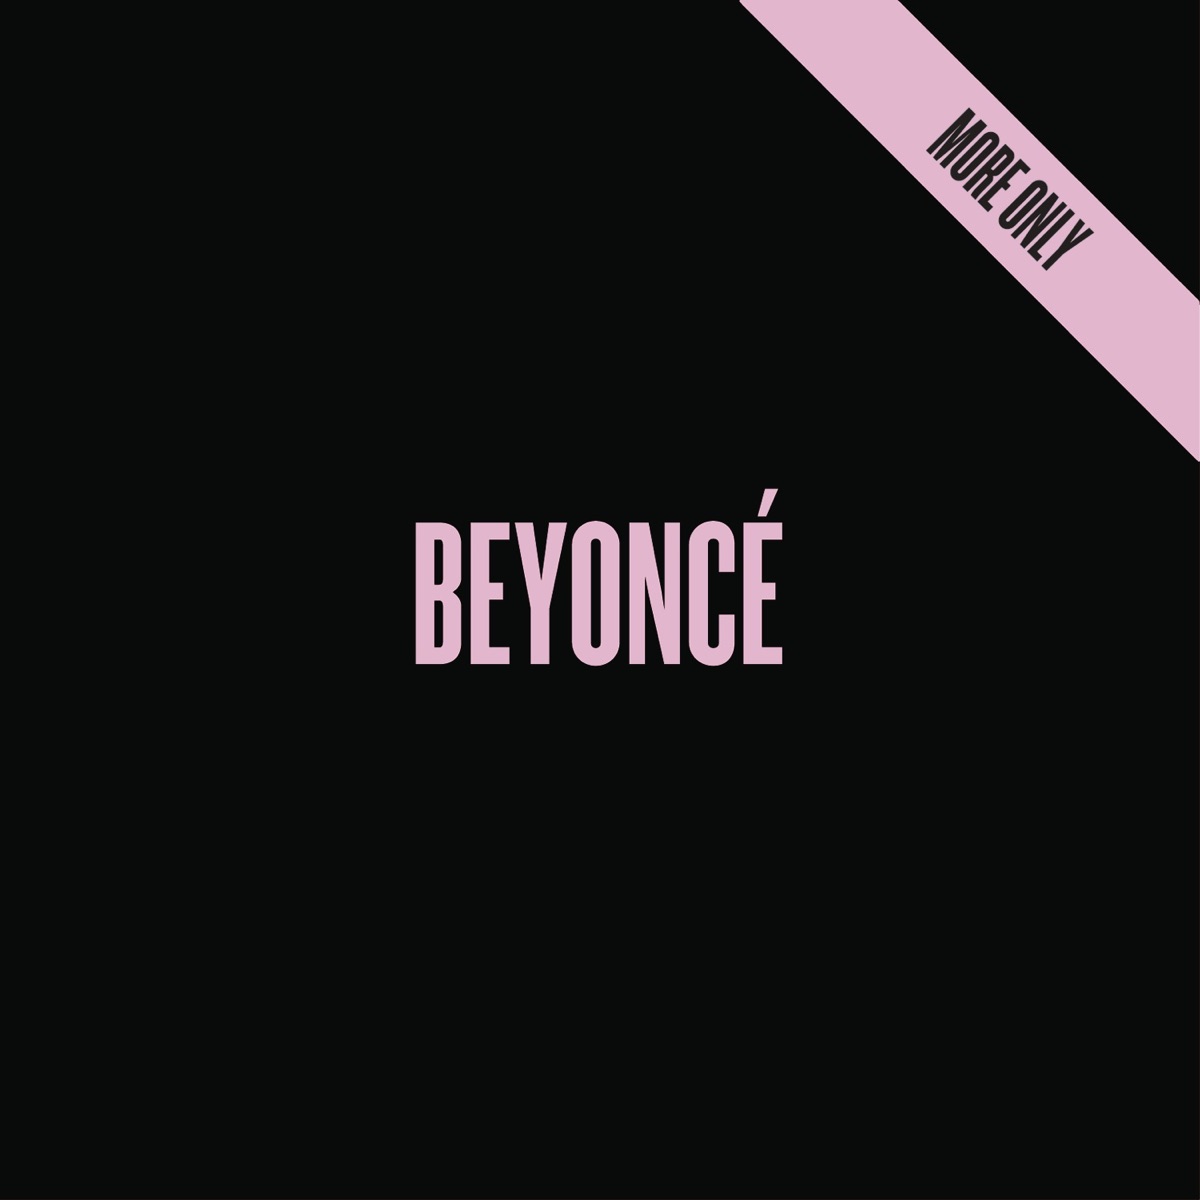 Beyoncé - BEYONCÉ (More Only) - EP